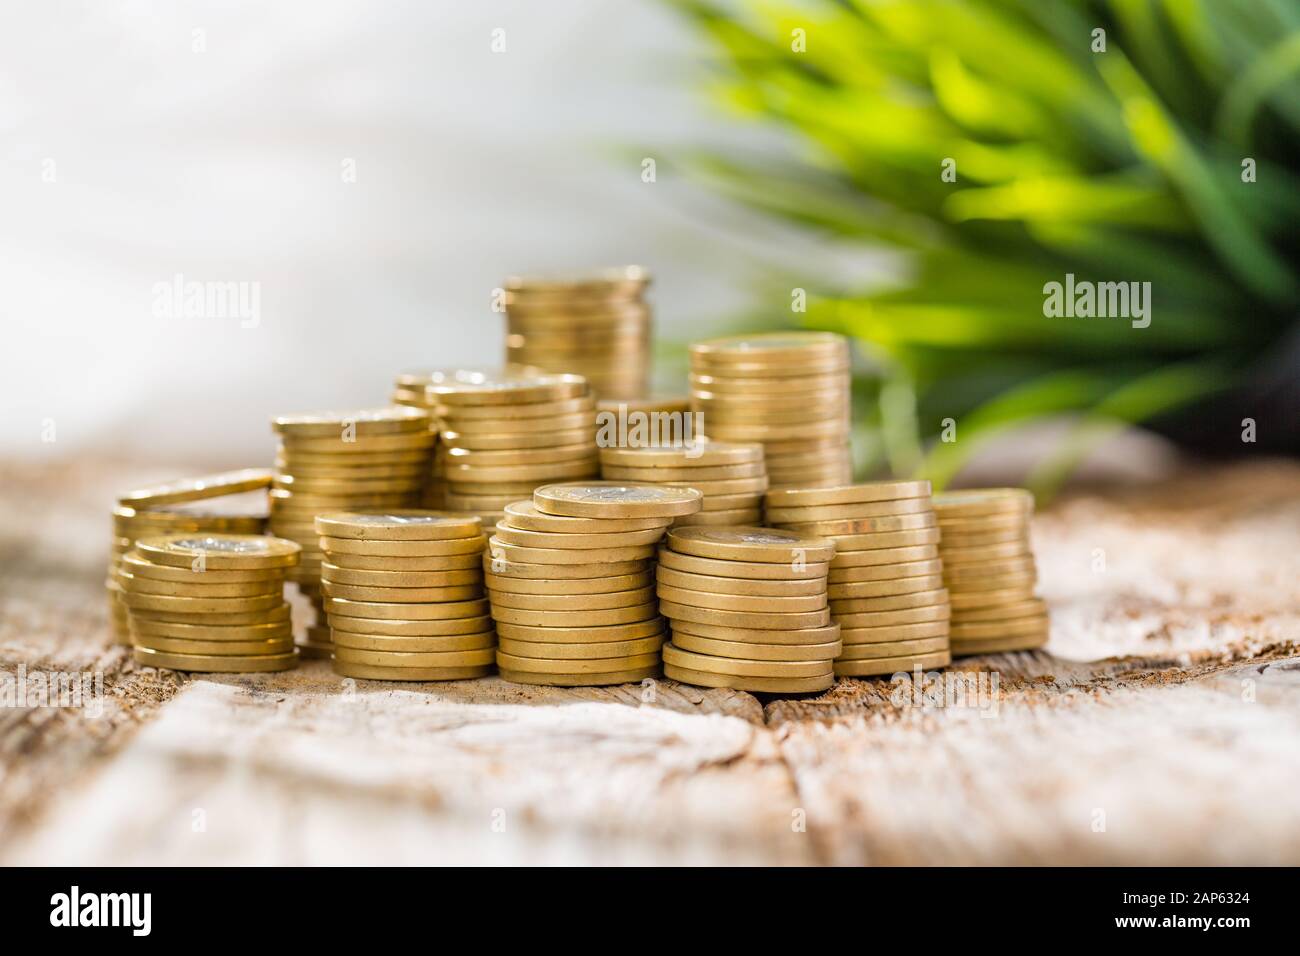 Medaglia d'oro dello stack di denaro Risparmiare utile risparmio tavolo in legno - immagine di stock Foto Stock